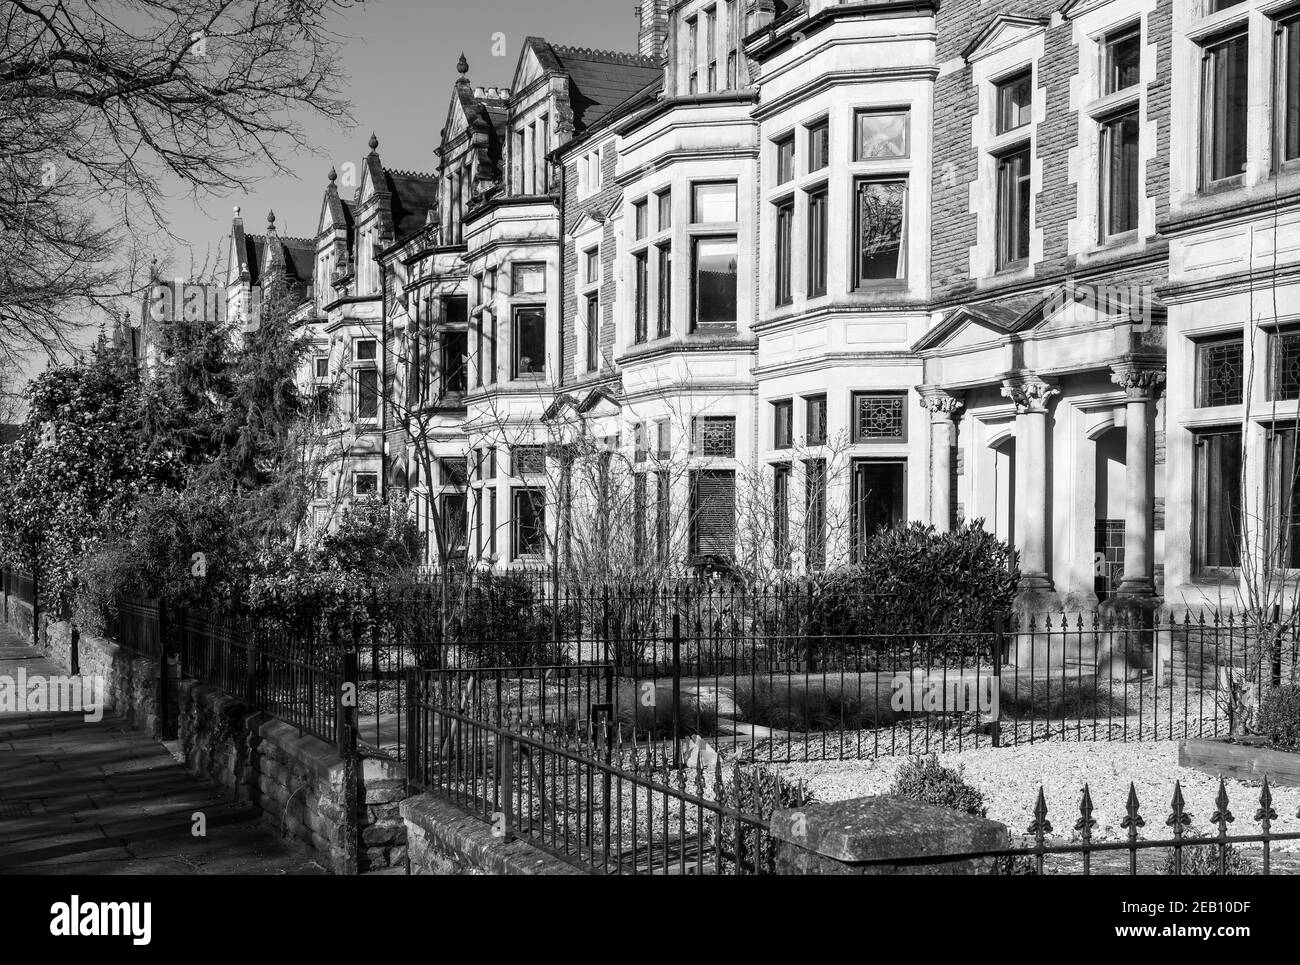 Foto in bianco e nero di case vittoriane in Cathedral Road, Pontcanna, Cardiff - una zona residenziale molto esclusiva. Foto Stock